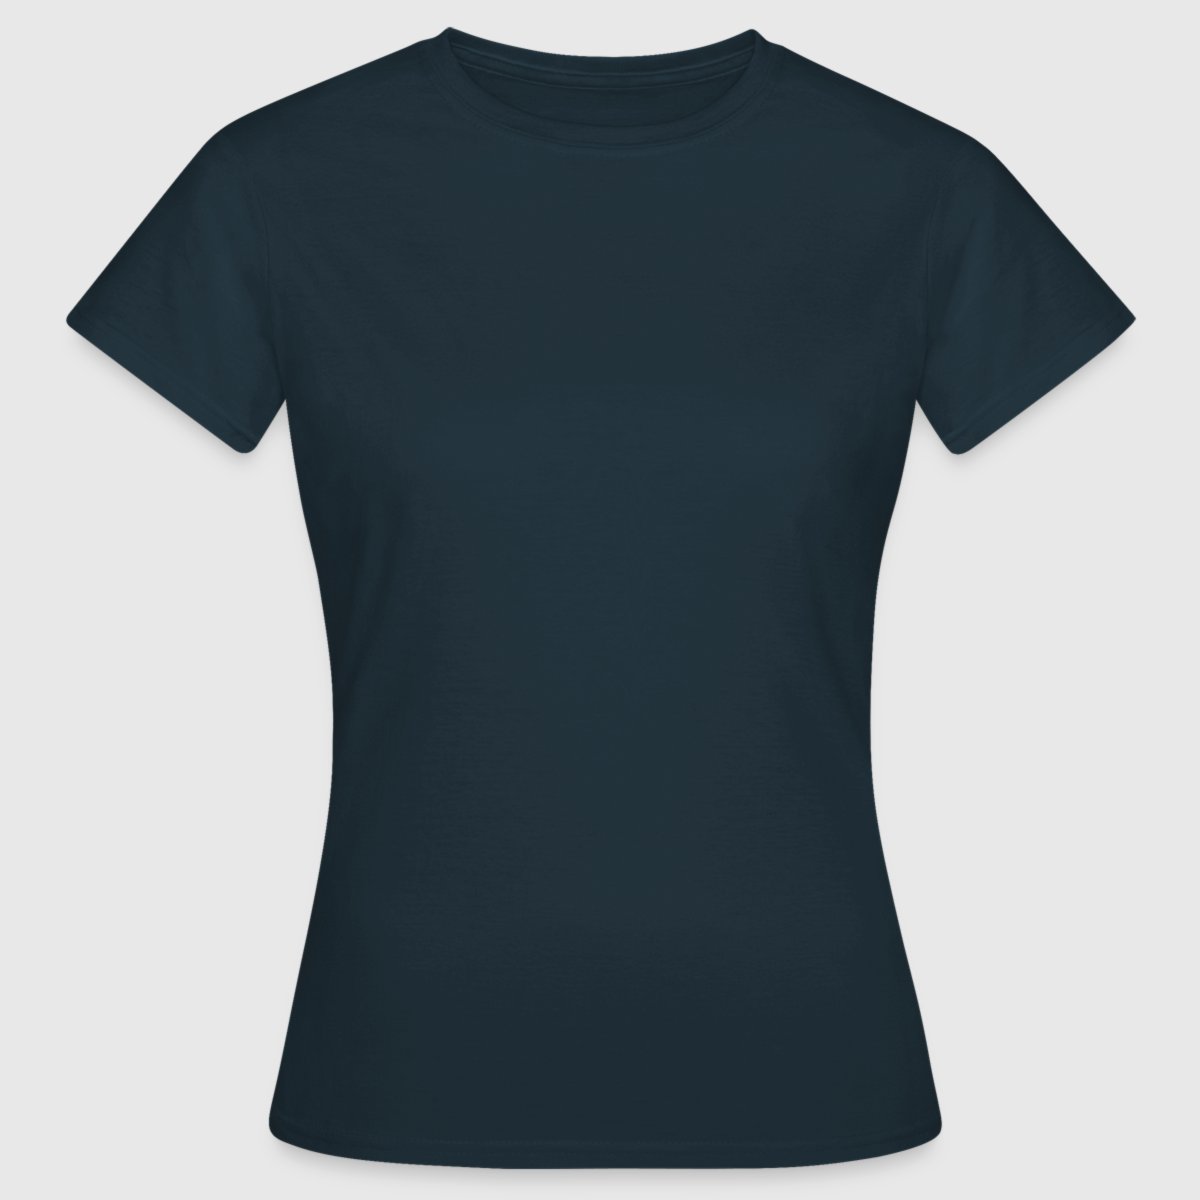 Women's T-Shirt - Front